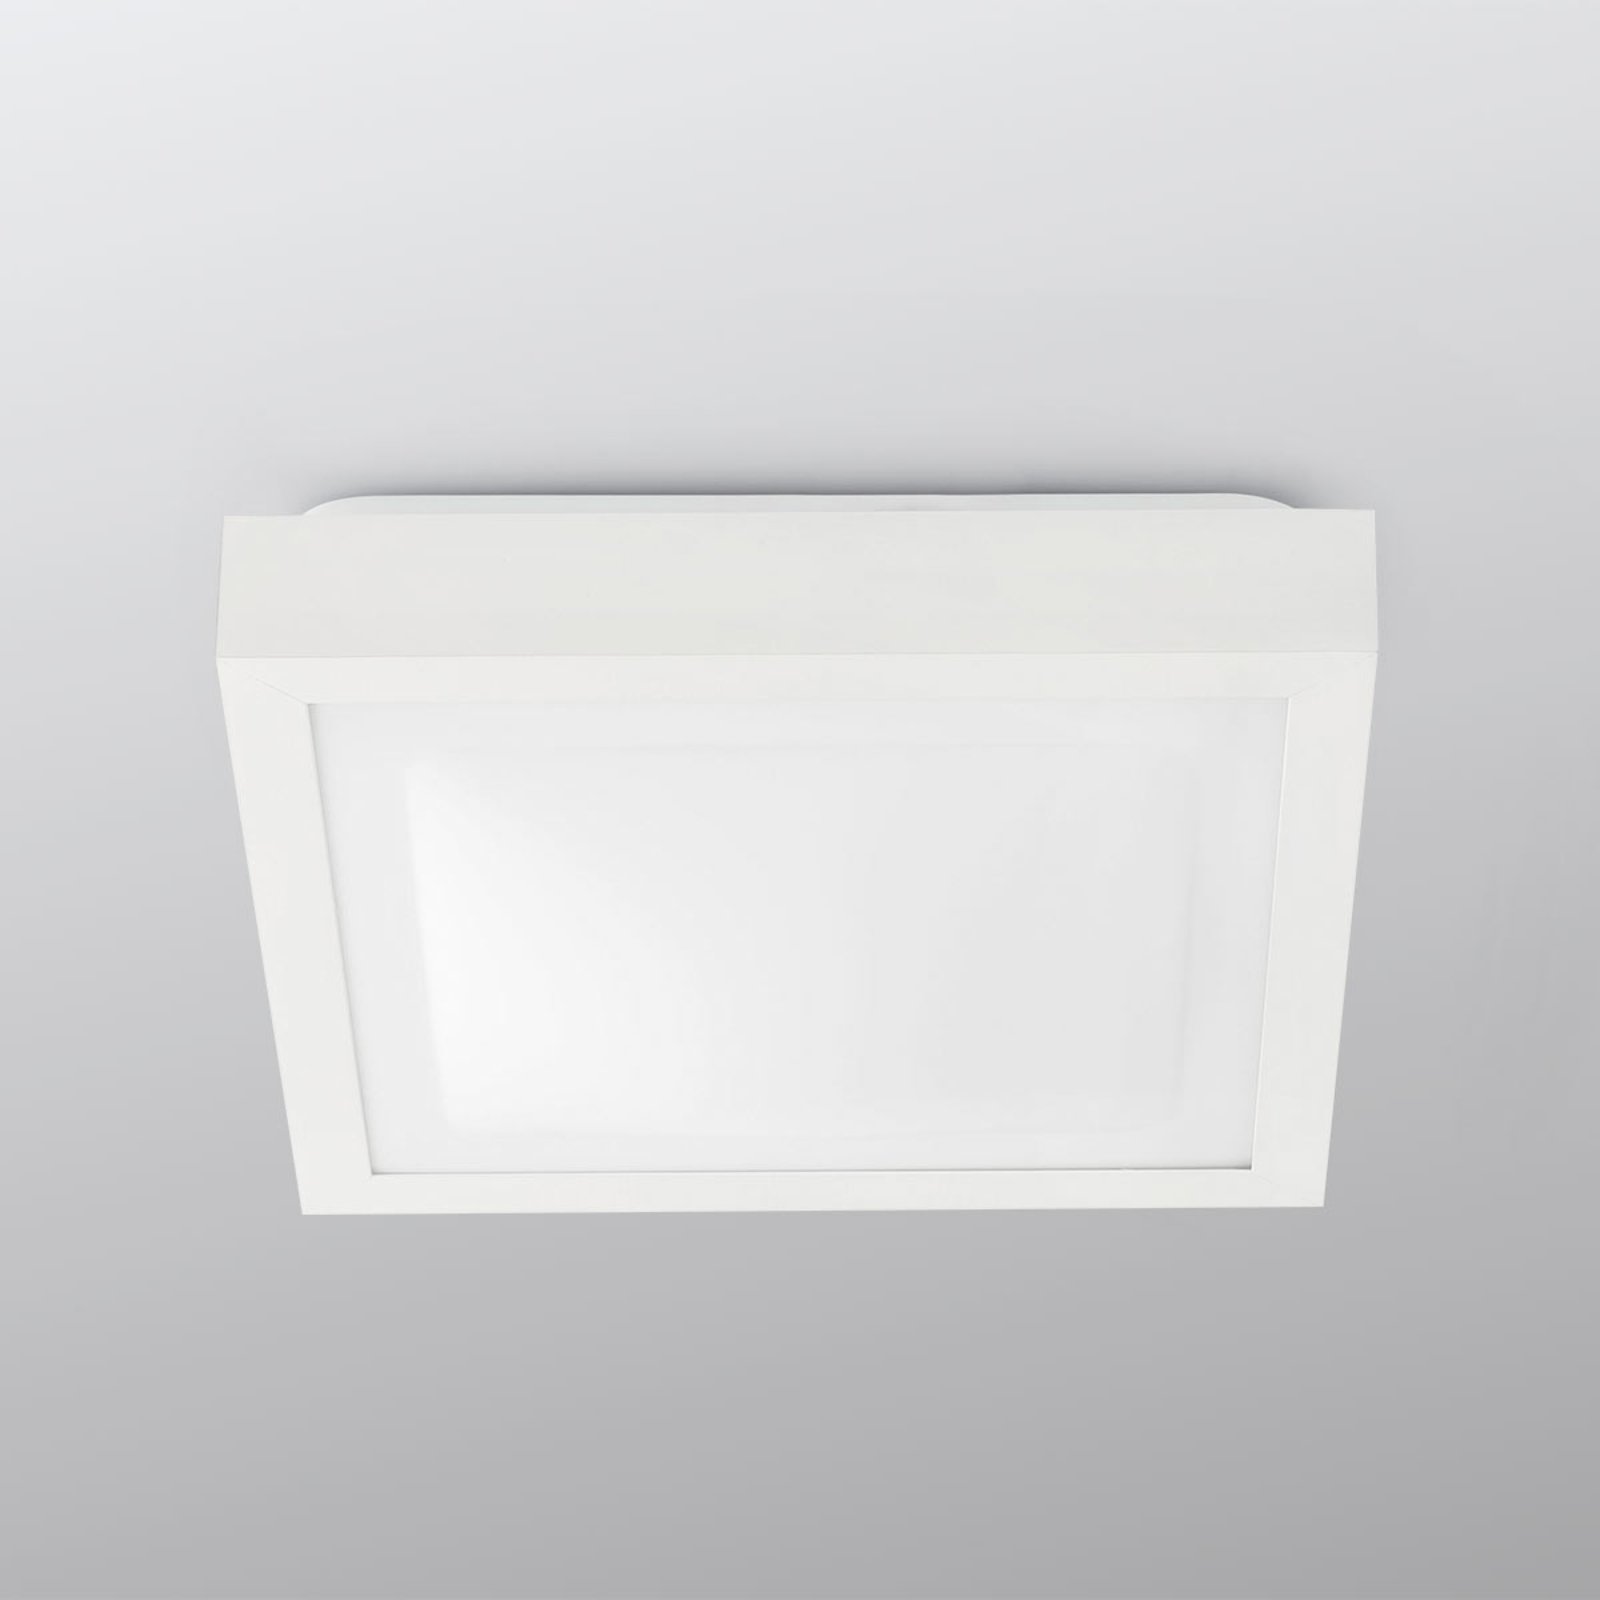 Tola bathroom ceiling light, 27 x 27 cm, white